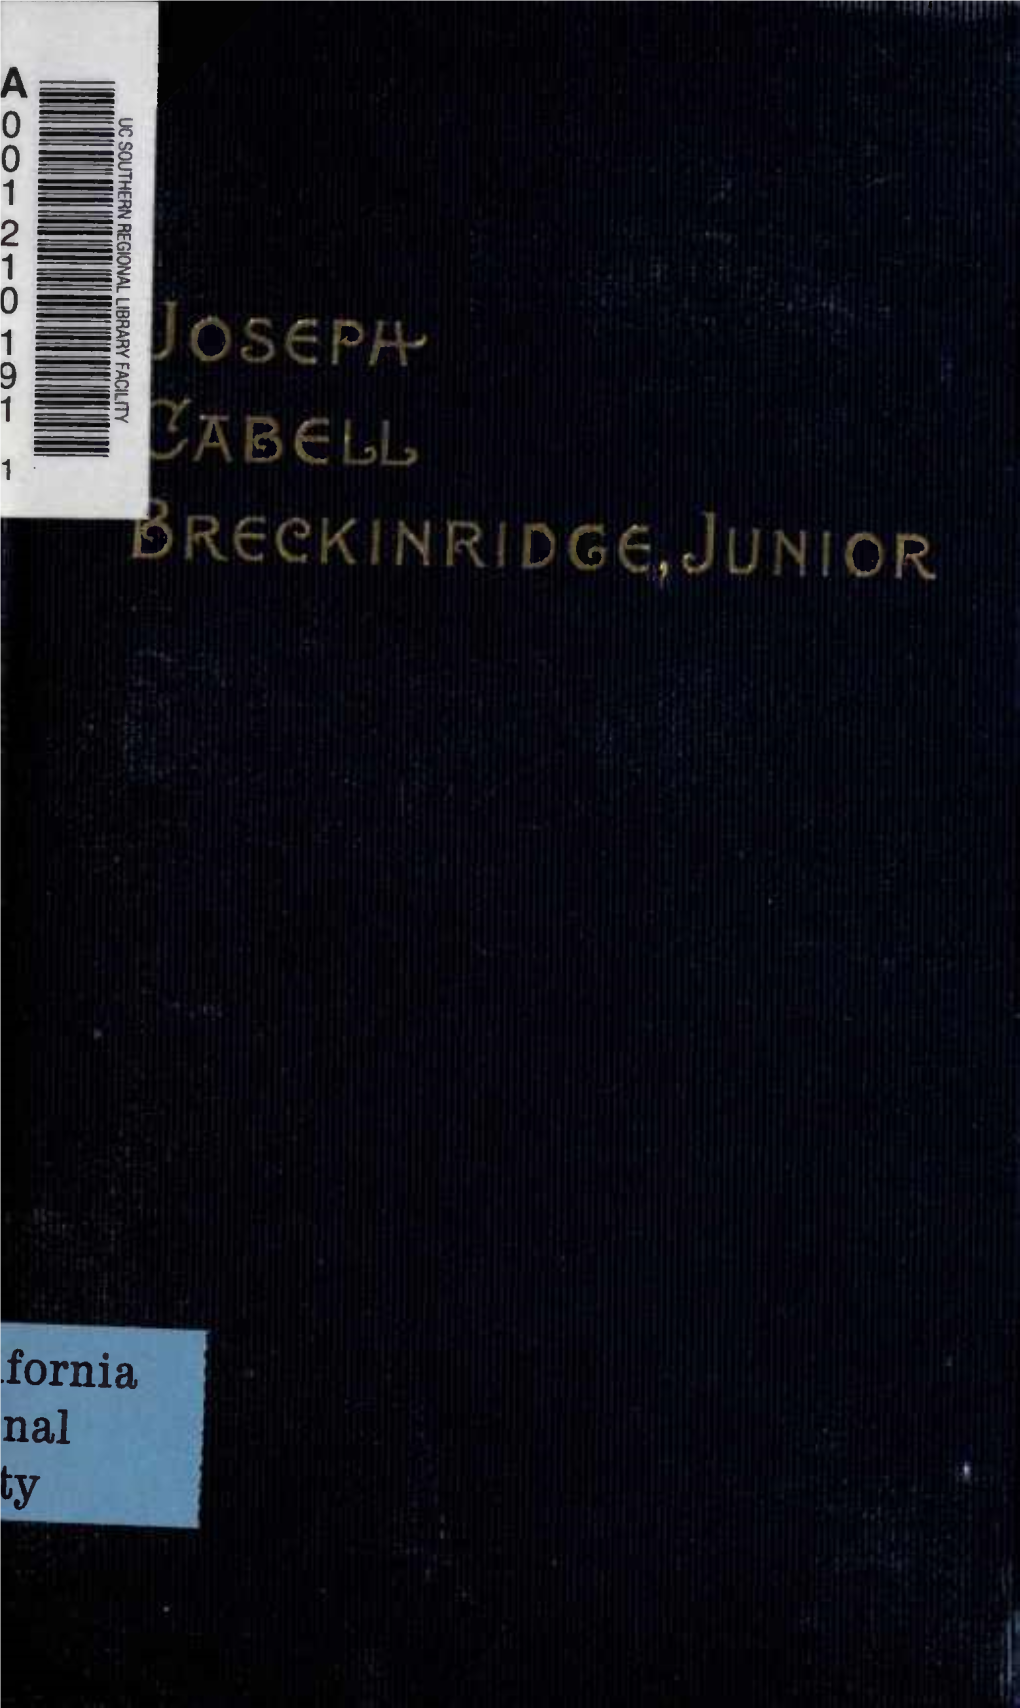 Breckinridge, Joseph Cabell, Junior, Ensign in the United States